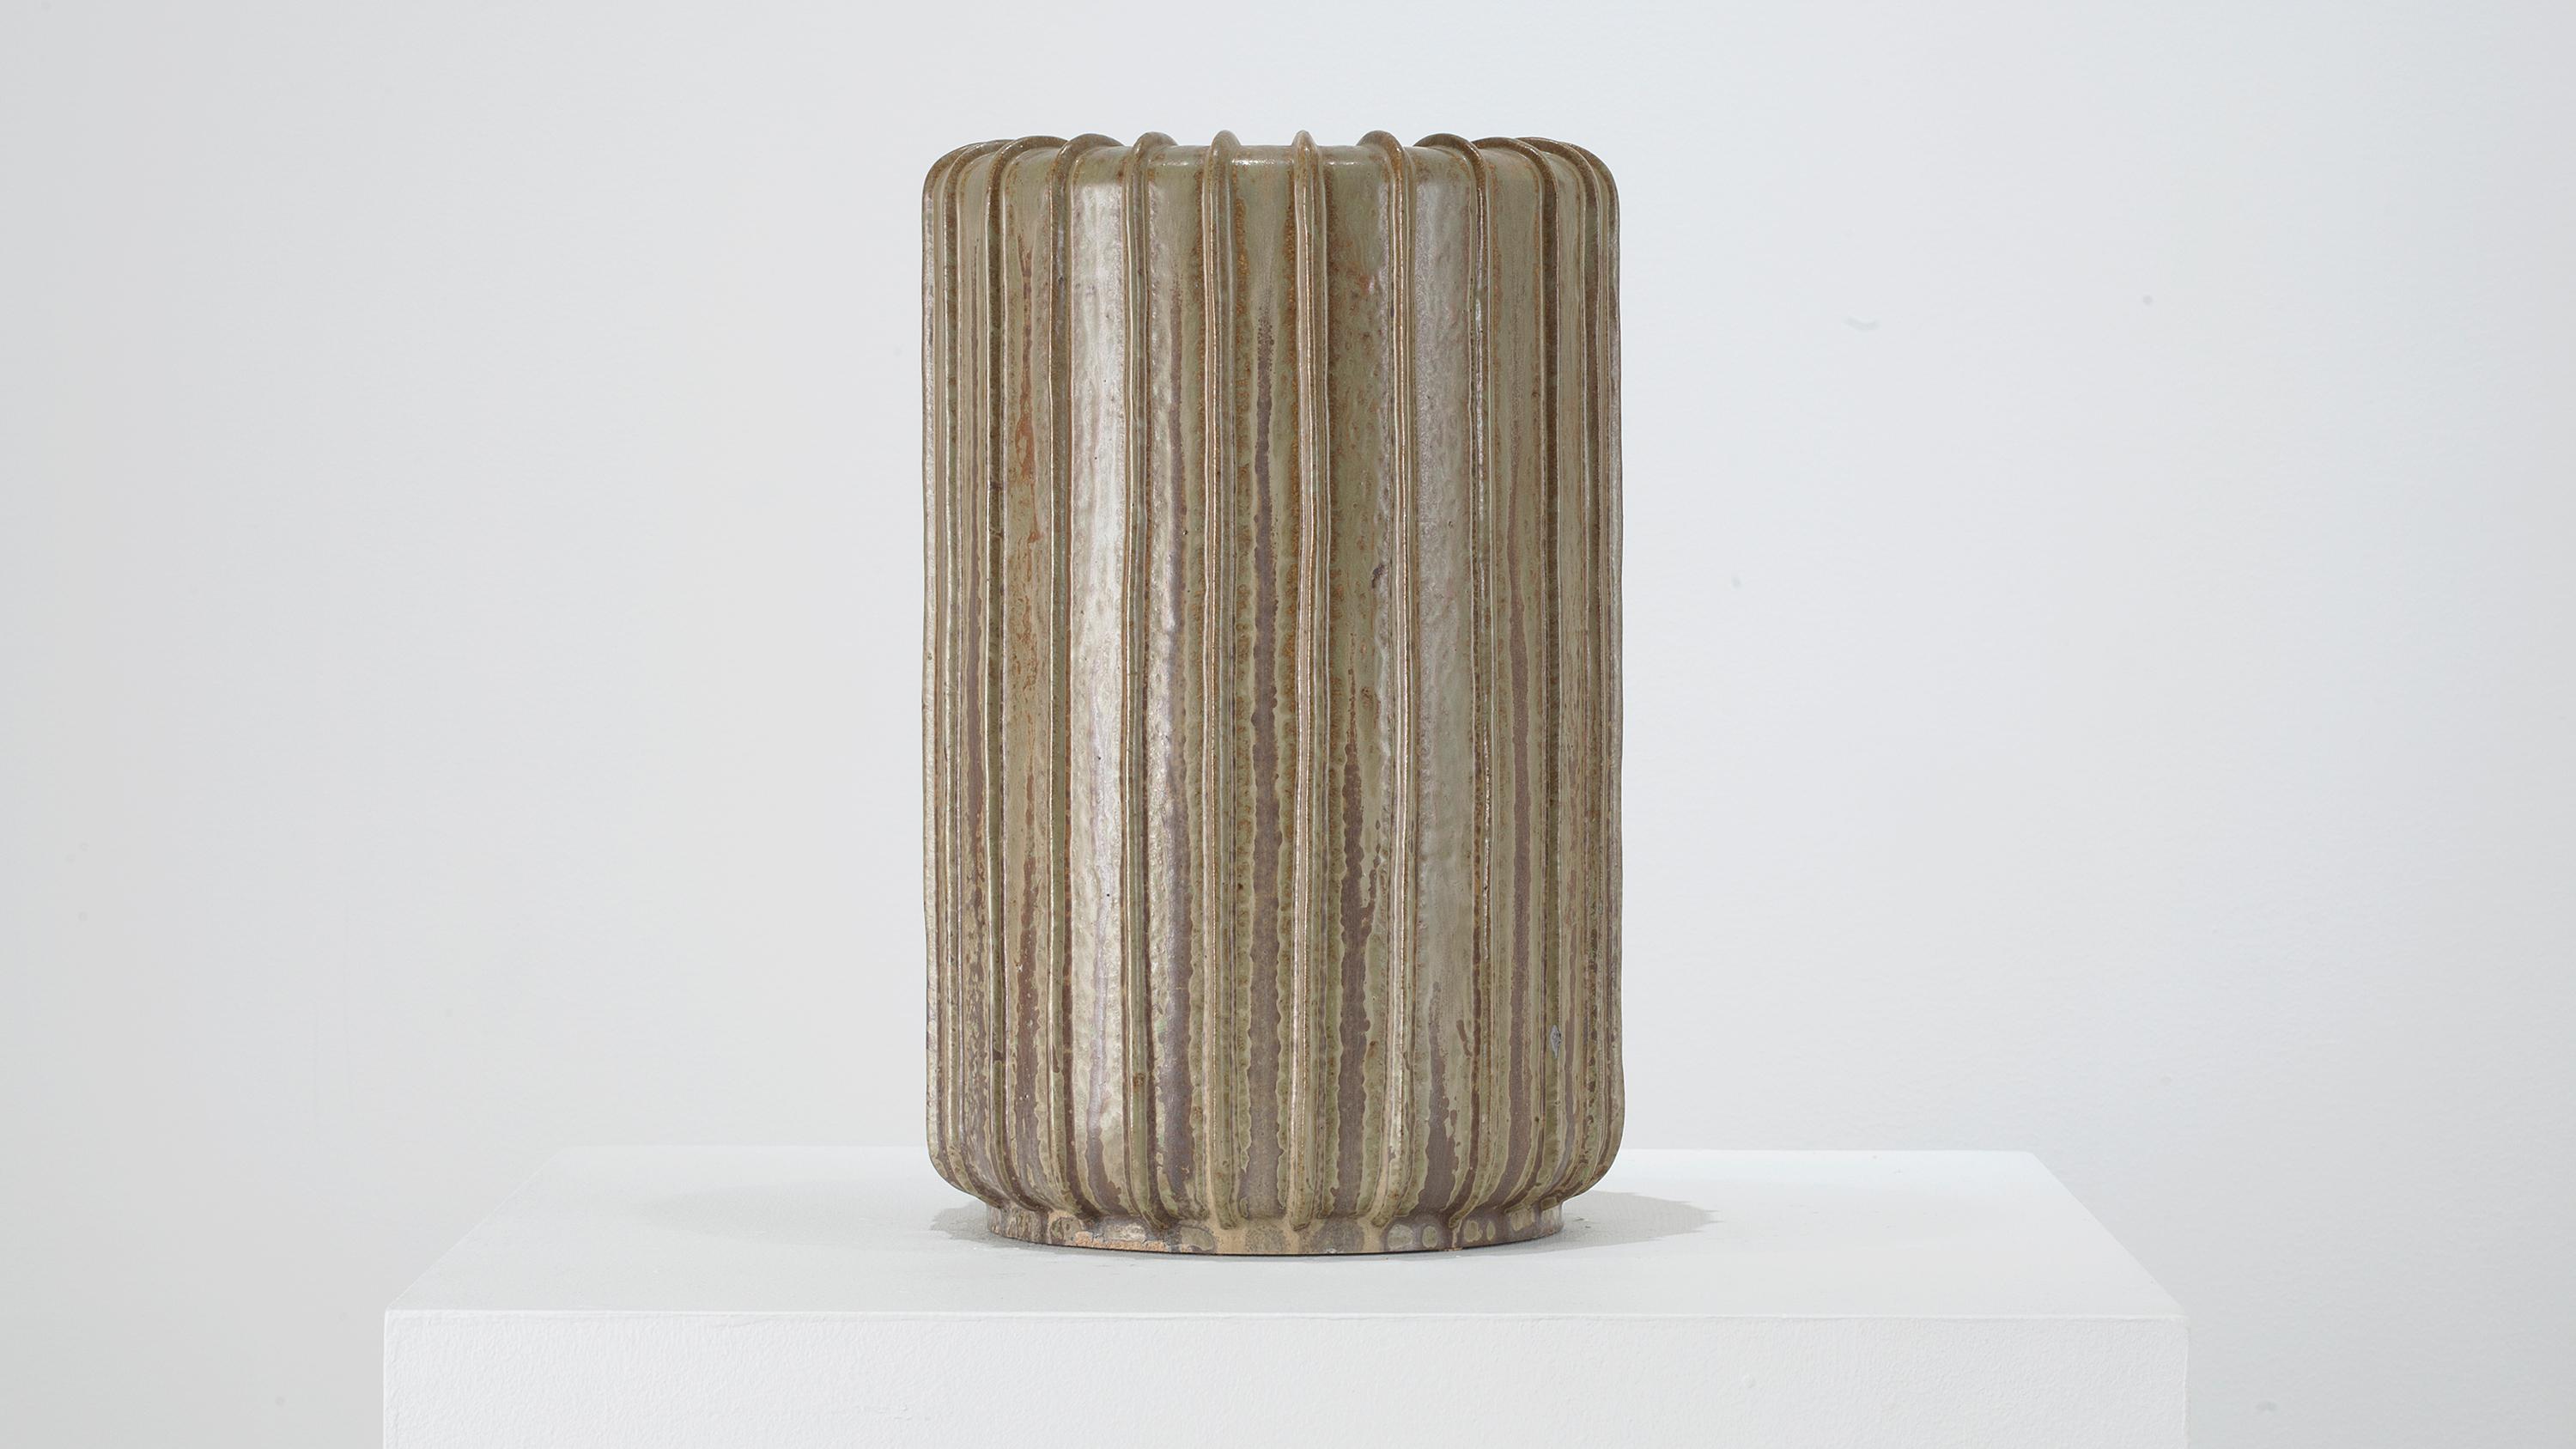 Magnifique grand vase côtelé par Arne Bang, Danemark, vers 1950. Vintage, en excellent état. 

Arne Bang (danois, 1901-1983)
Grand vase en grès côtelée, Danemark, vers 1950
Grès
Mesures : 15.5